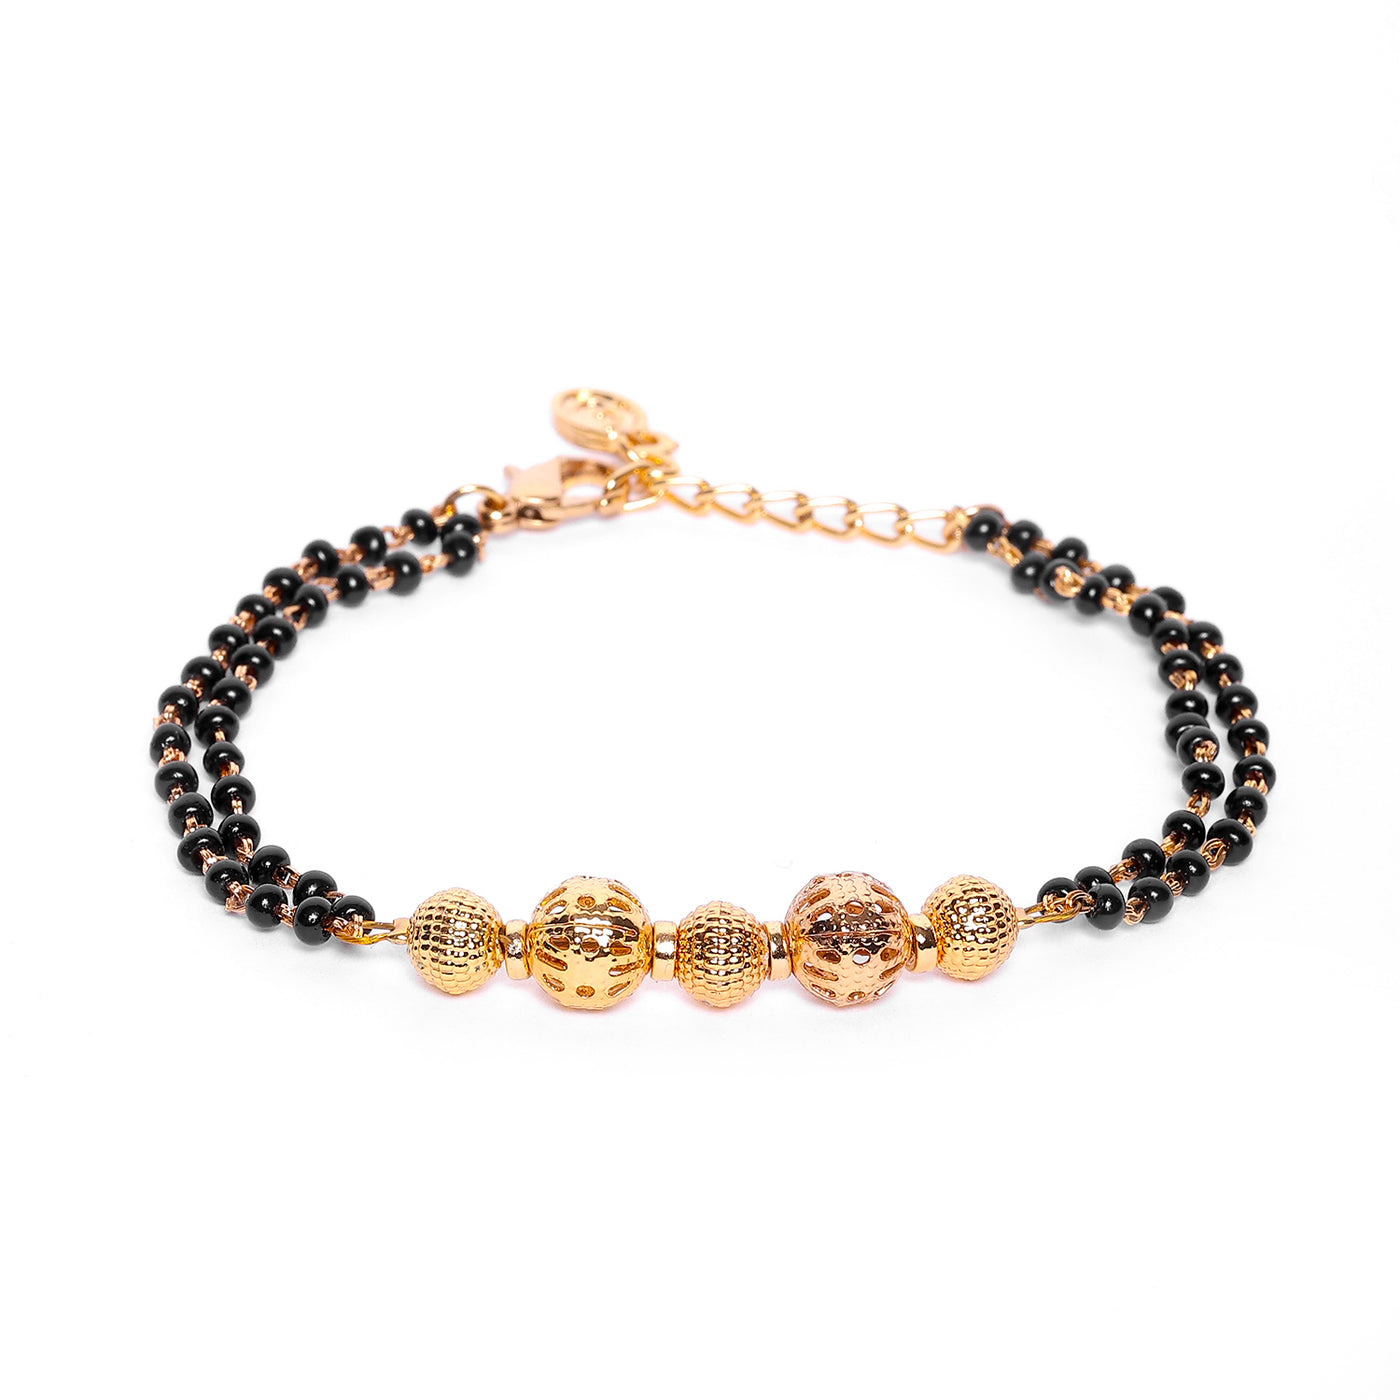 Gold & Turquoise Beads Bracelet | Elephant Charm Bracelet | The Fine World  – The Fineworld